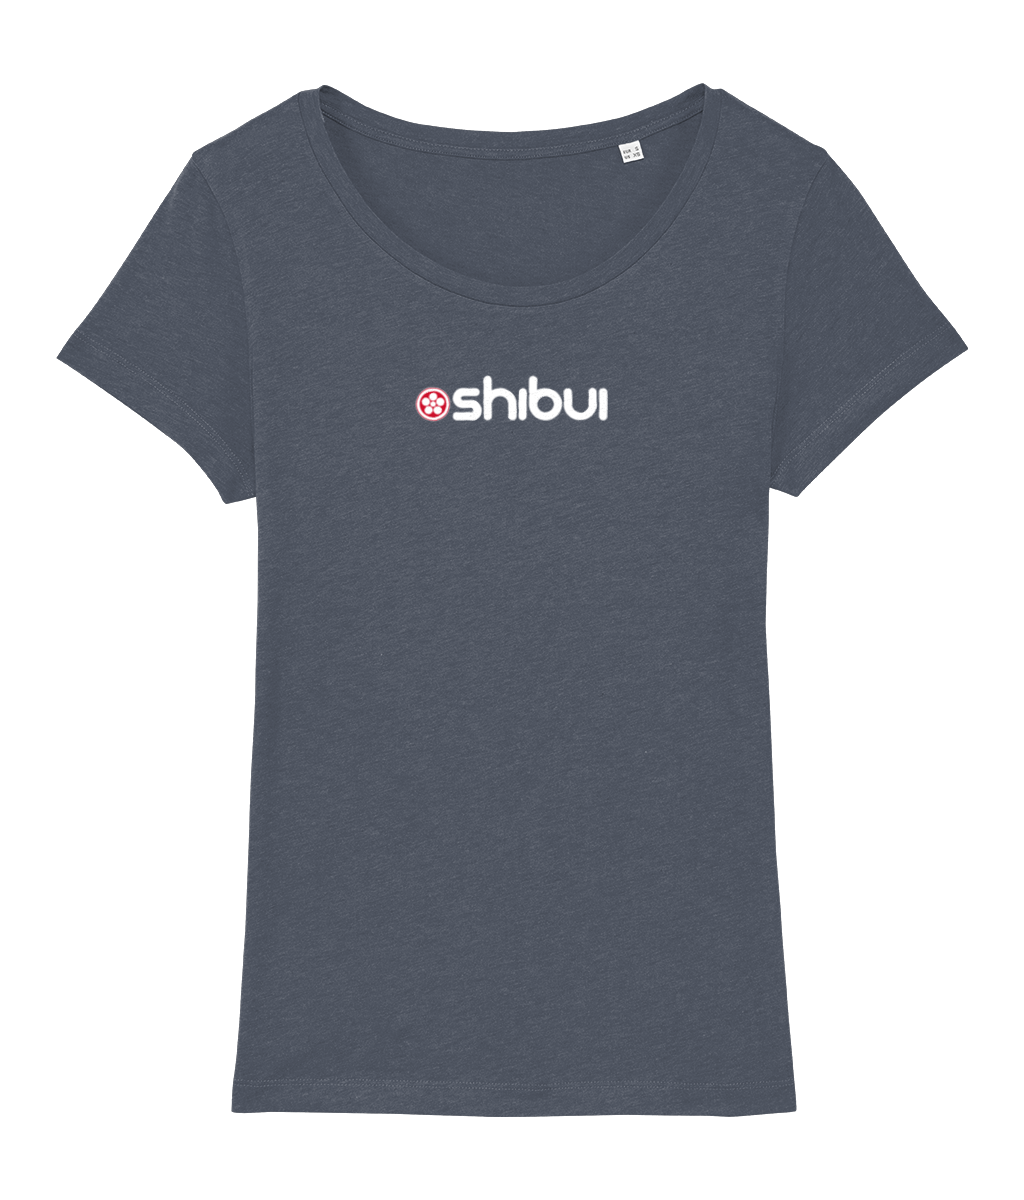 Shibui logo Women's T-Shirt